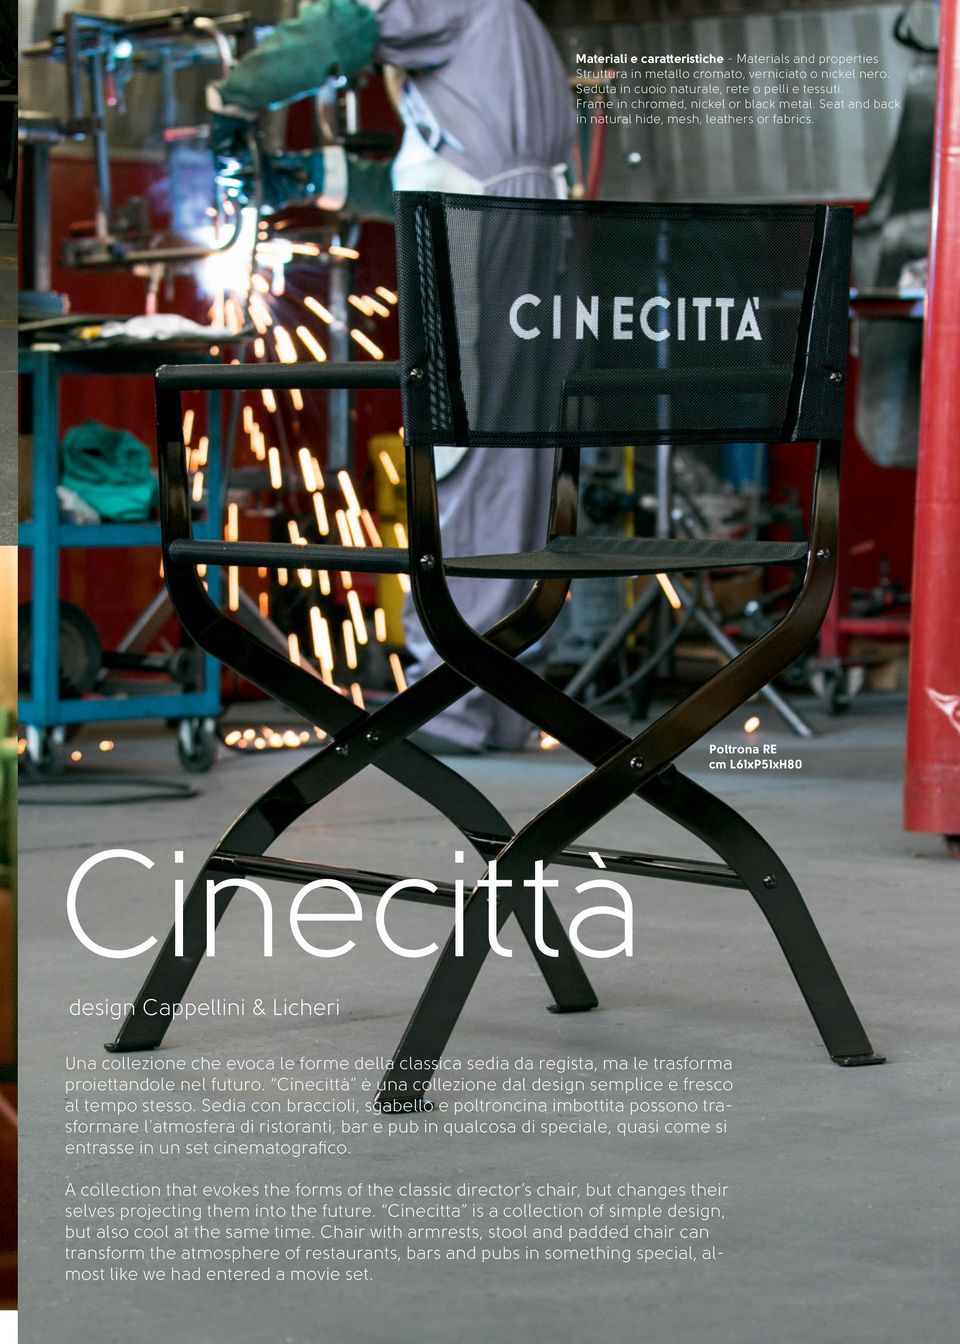 Poltrona RE cm L61xP51xH80 Cinecittà design Cappellini & Licheri Una collezione che evoca le forme della classica sedia da regista, ma le trasforma proiettandole nel futuro.